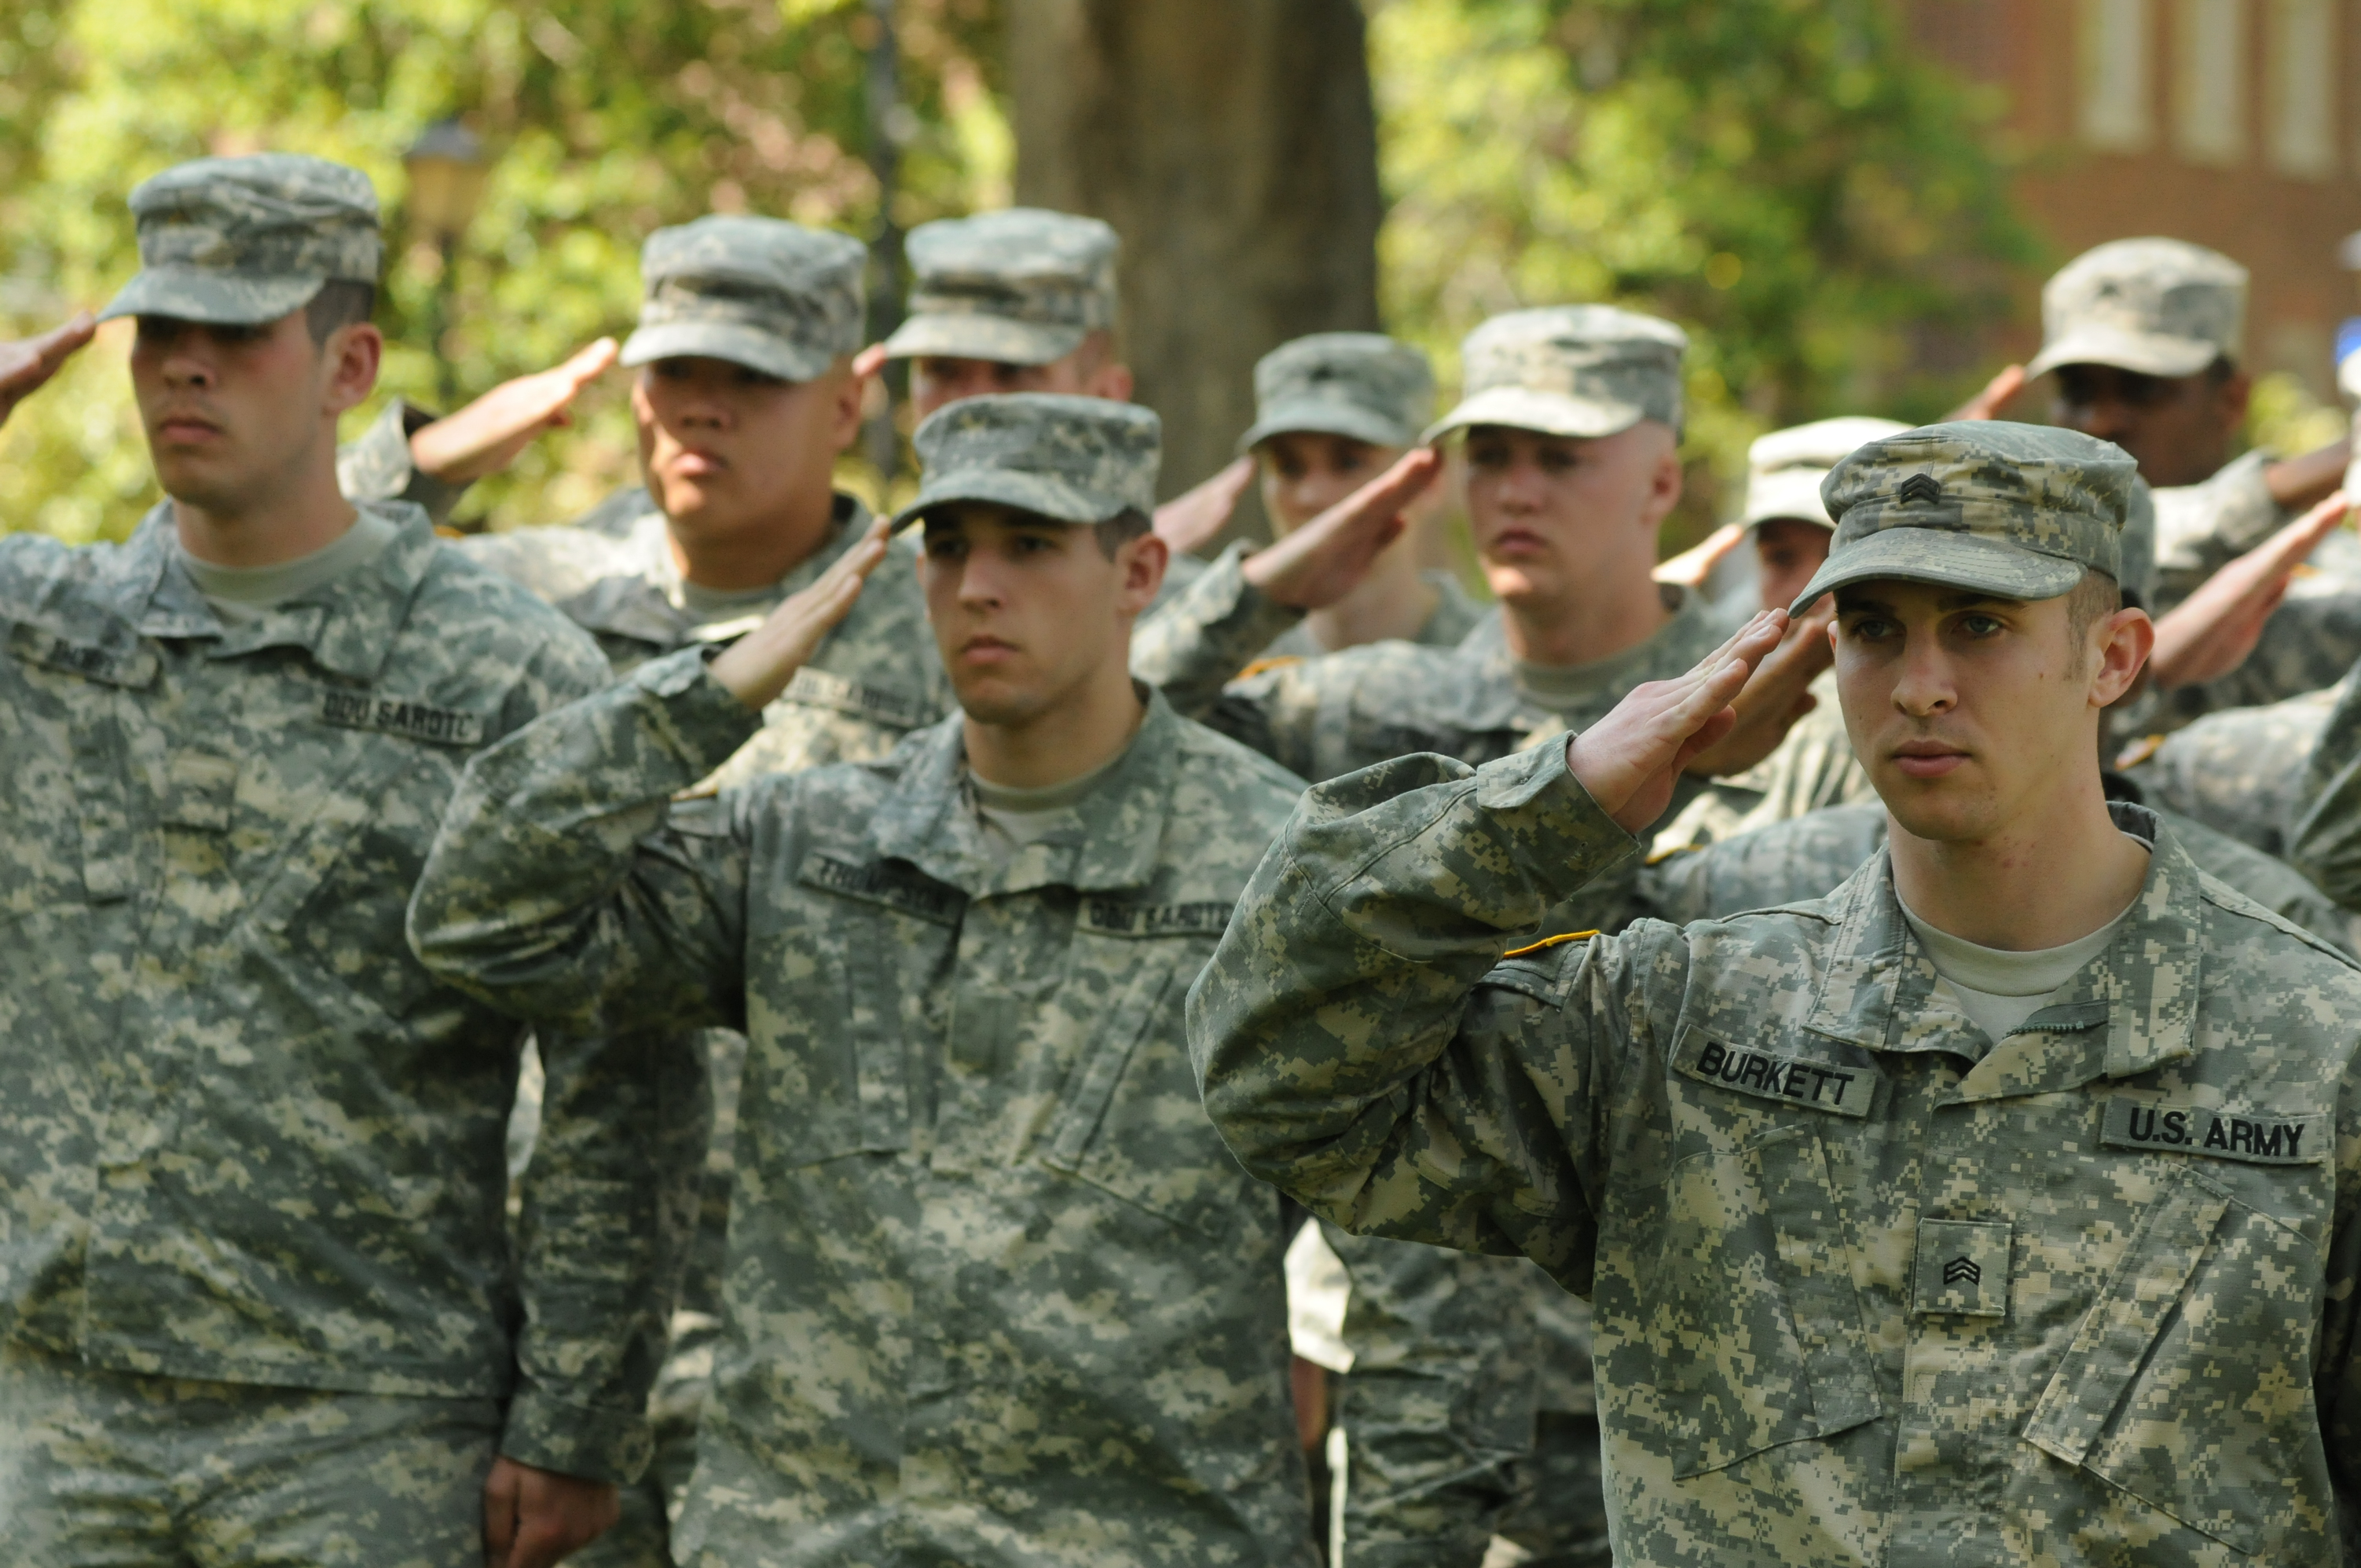 men in uniform saluting